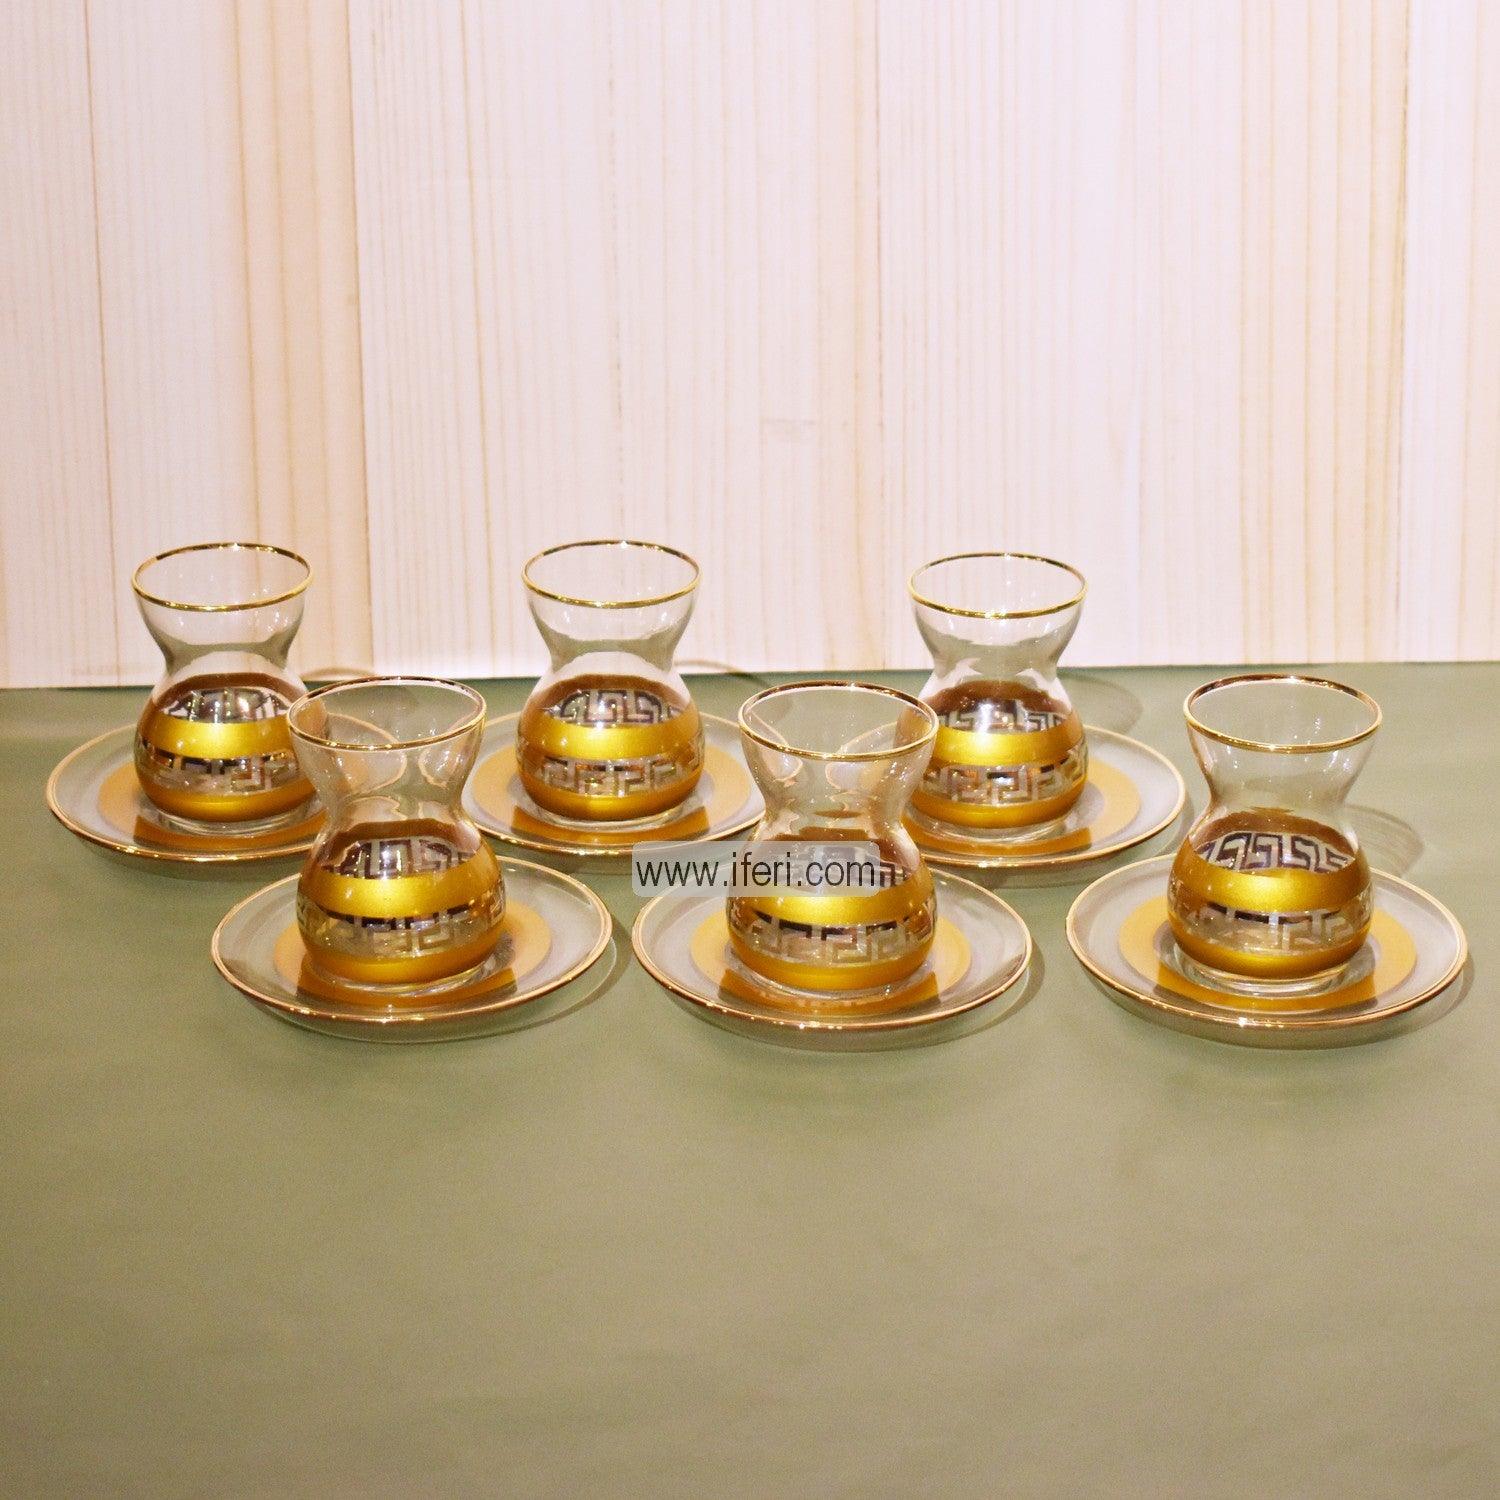 12 Pcs Exclusive Glass Turkish Tea Cup & Saucer Set GA2007 Price in Bangladesh - iferi.com